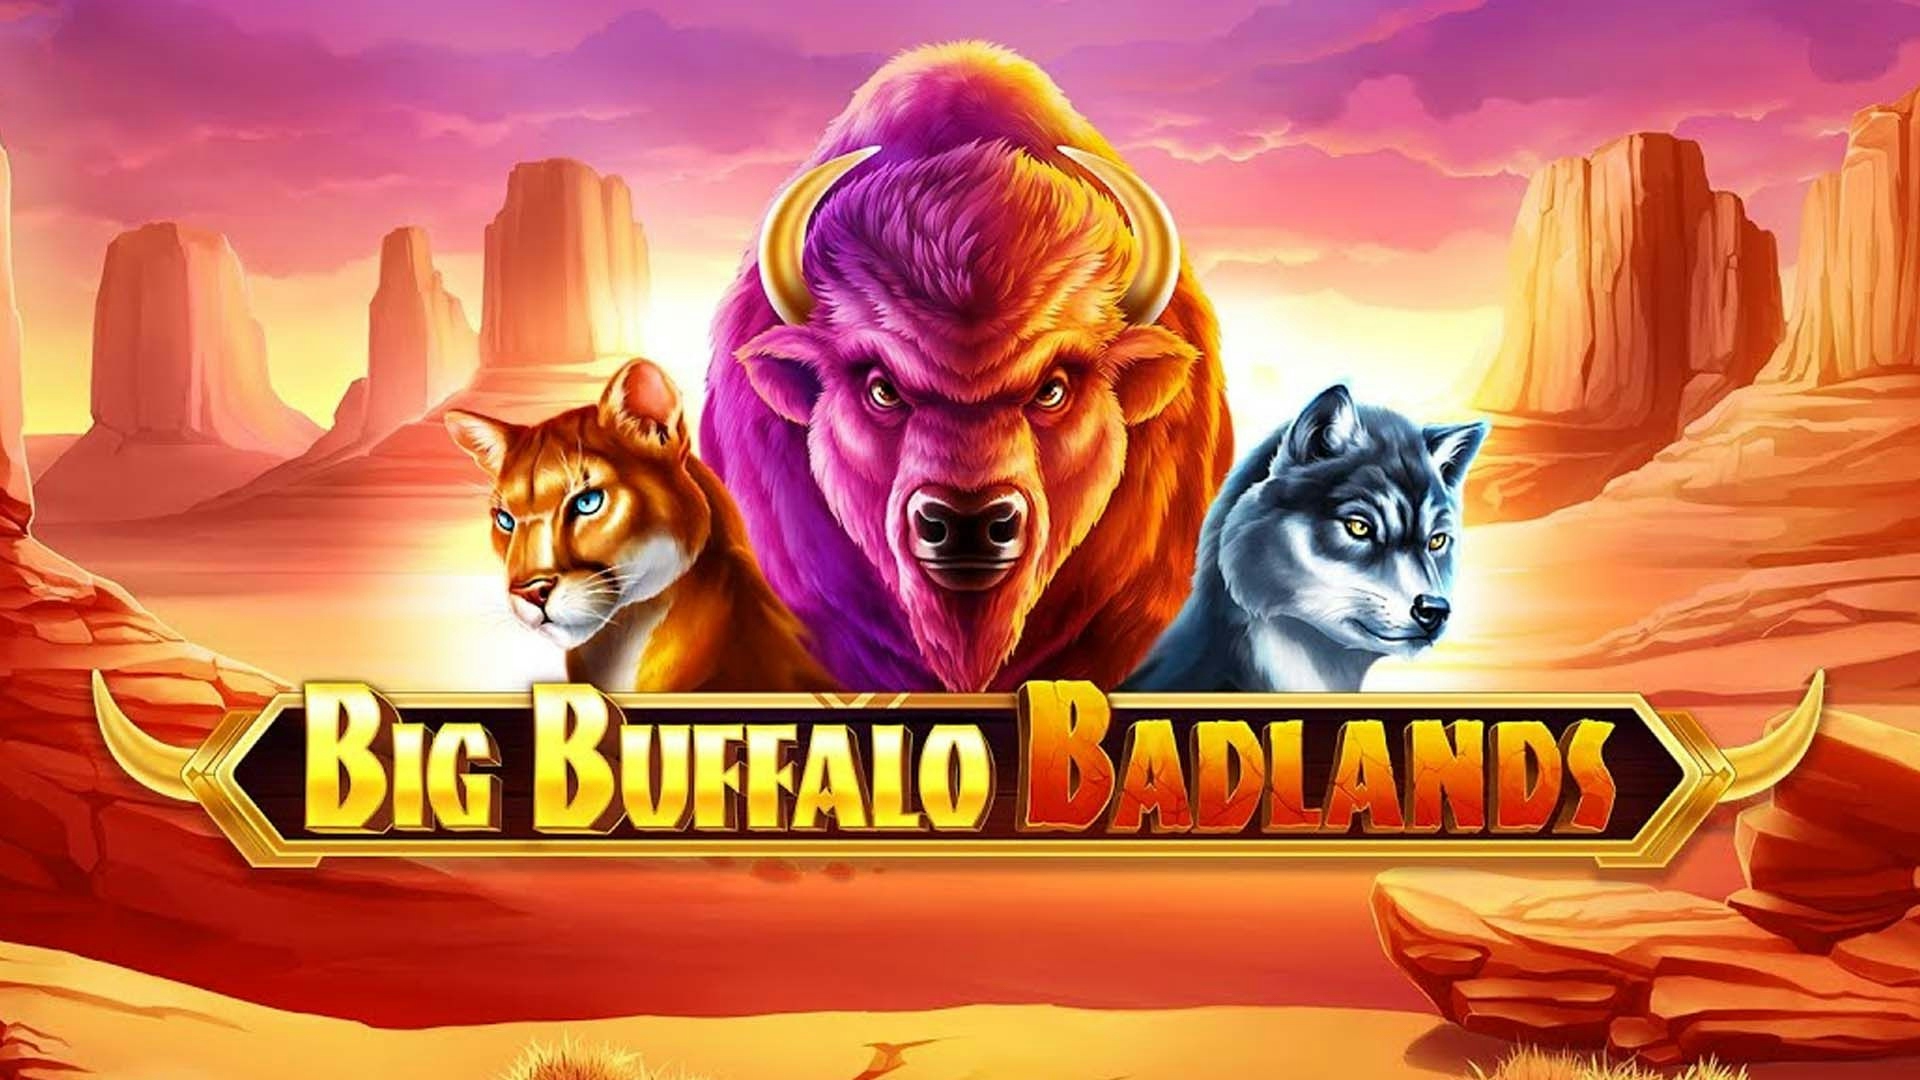 Big Buffalo Badlands